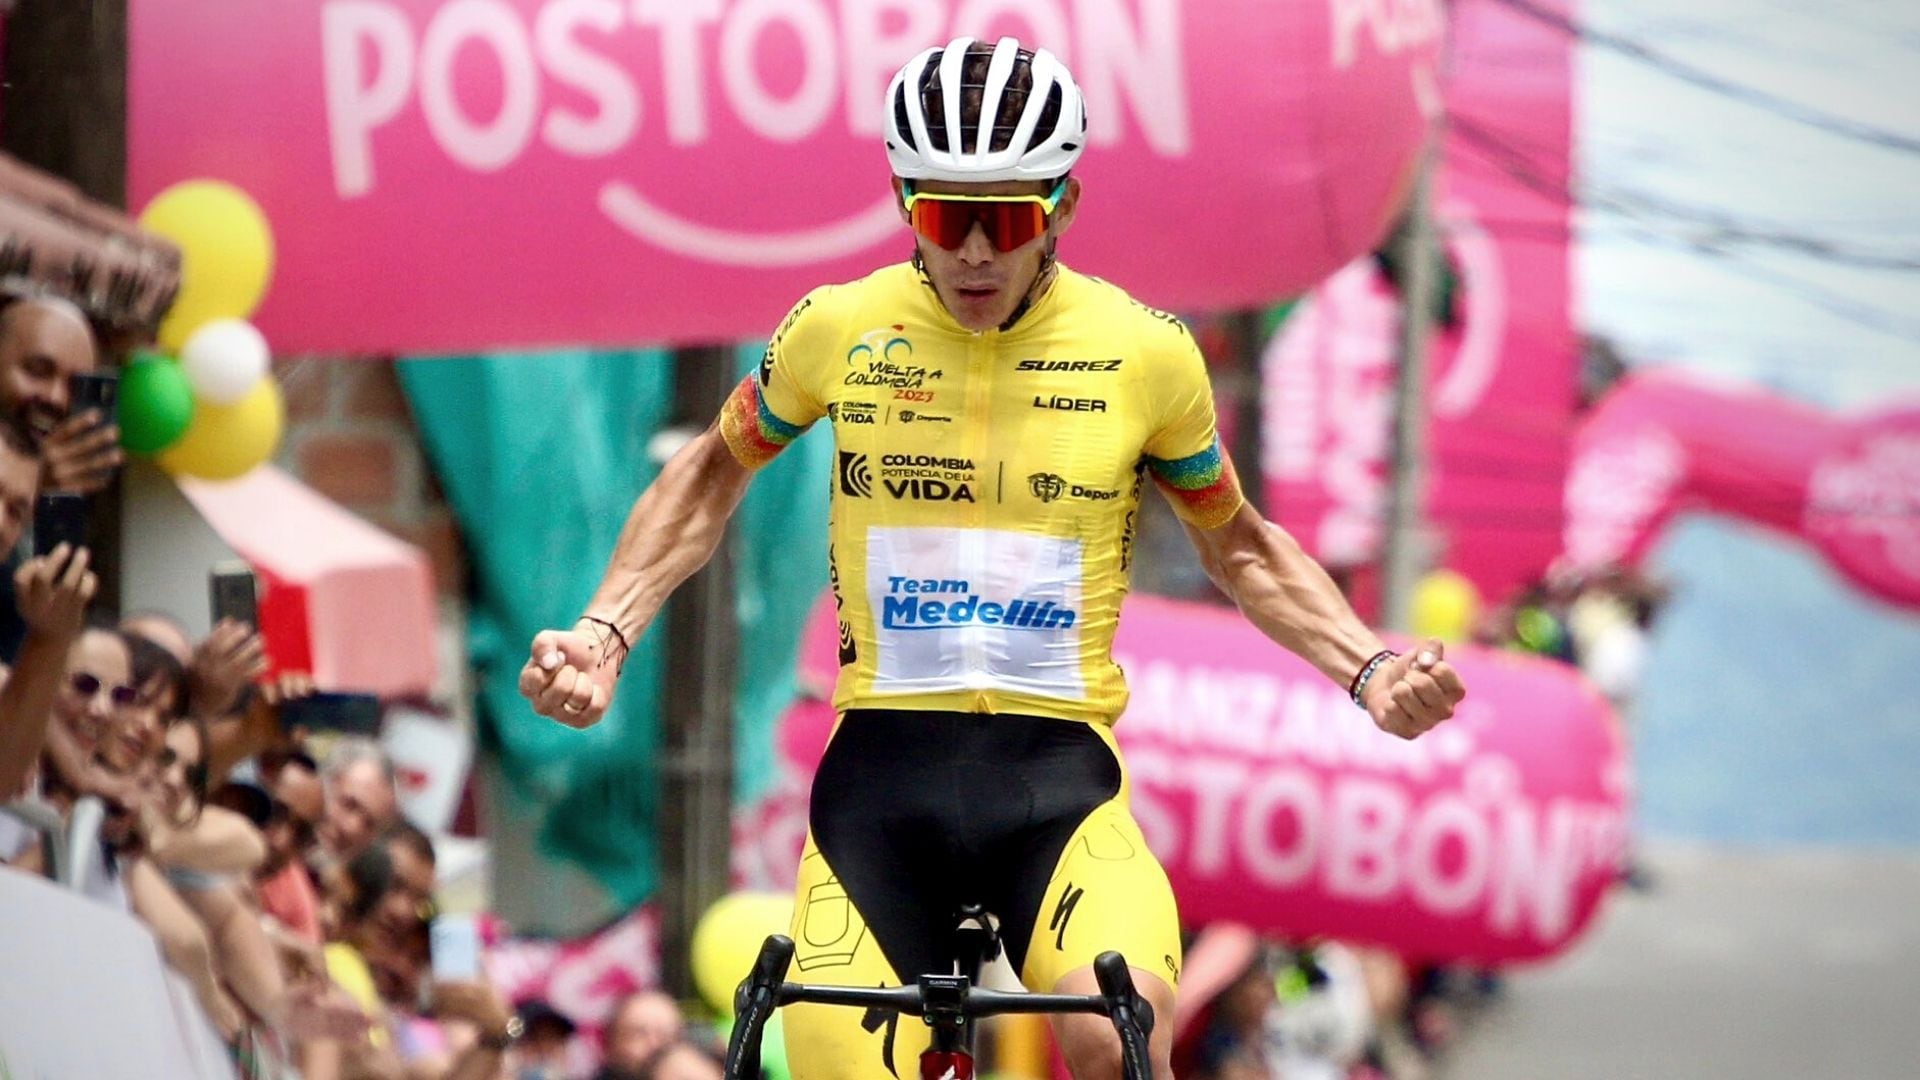 El ciclista colombiano está imparable en la Vuelta a Colombia. Foto: Team Medellín